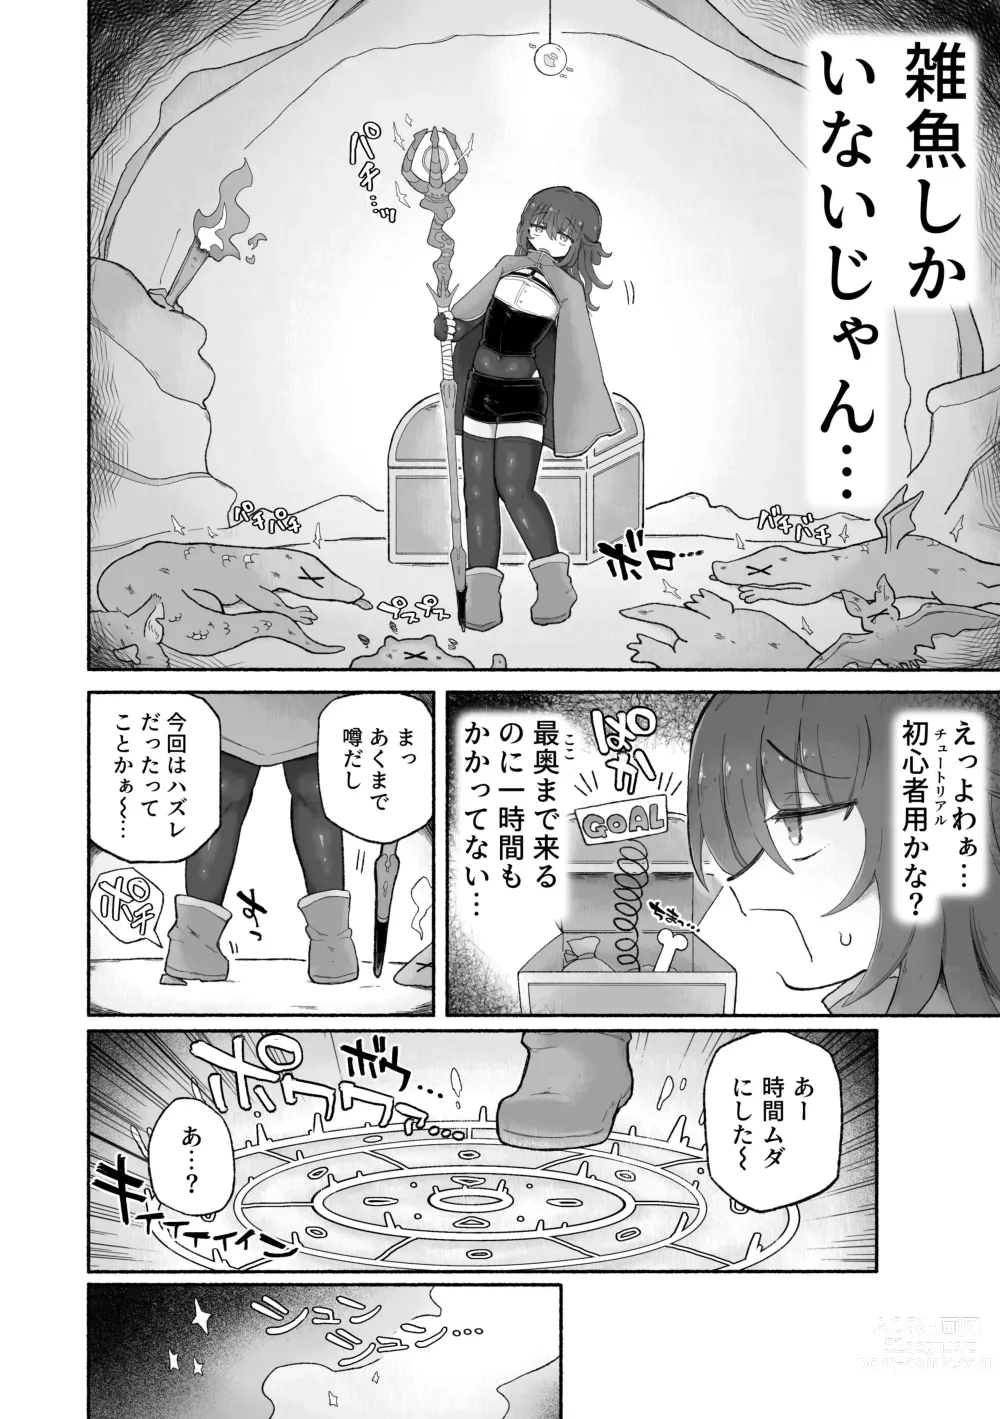 Page 4 of doujinshi Do hamari chui no kyosei danjon! 〜Mugen shasei no kairaku jigoku e yokoso〜